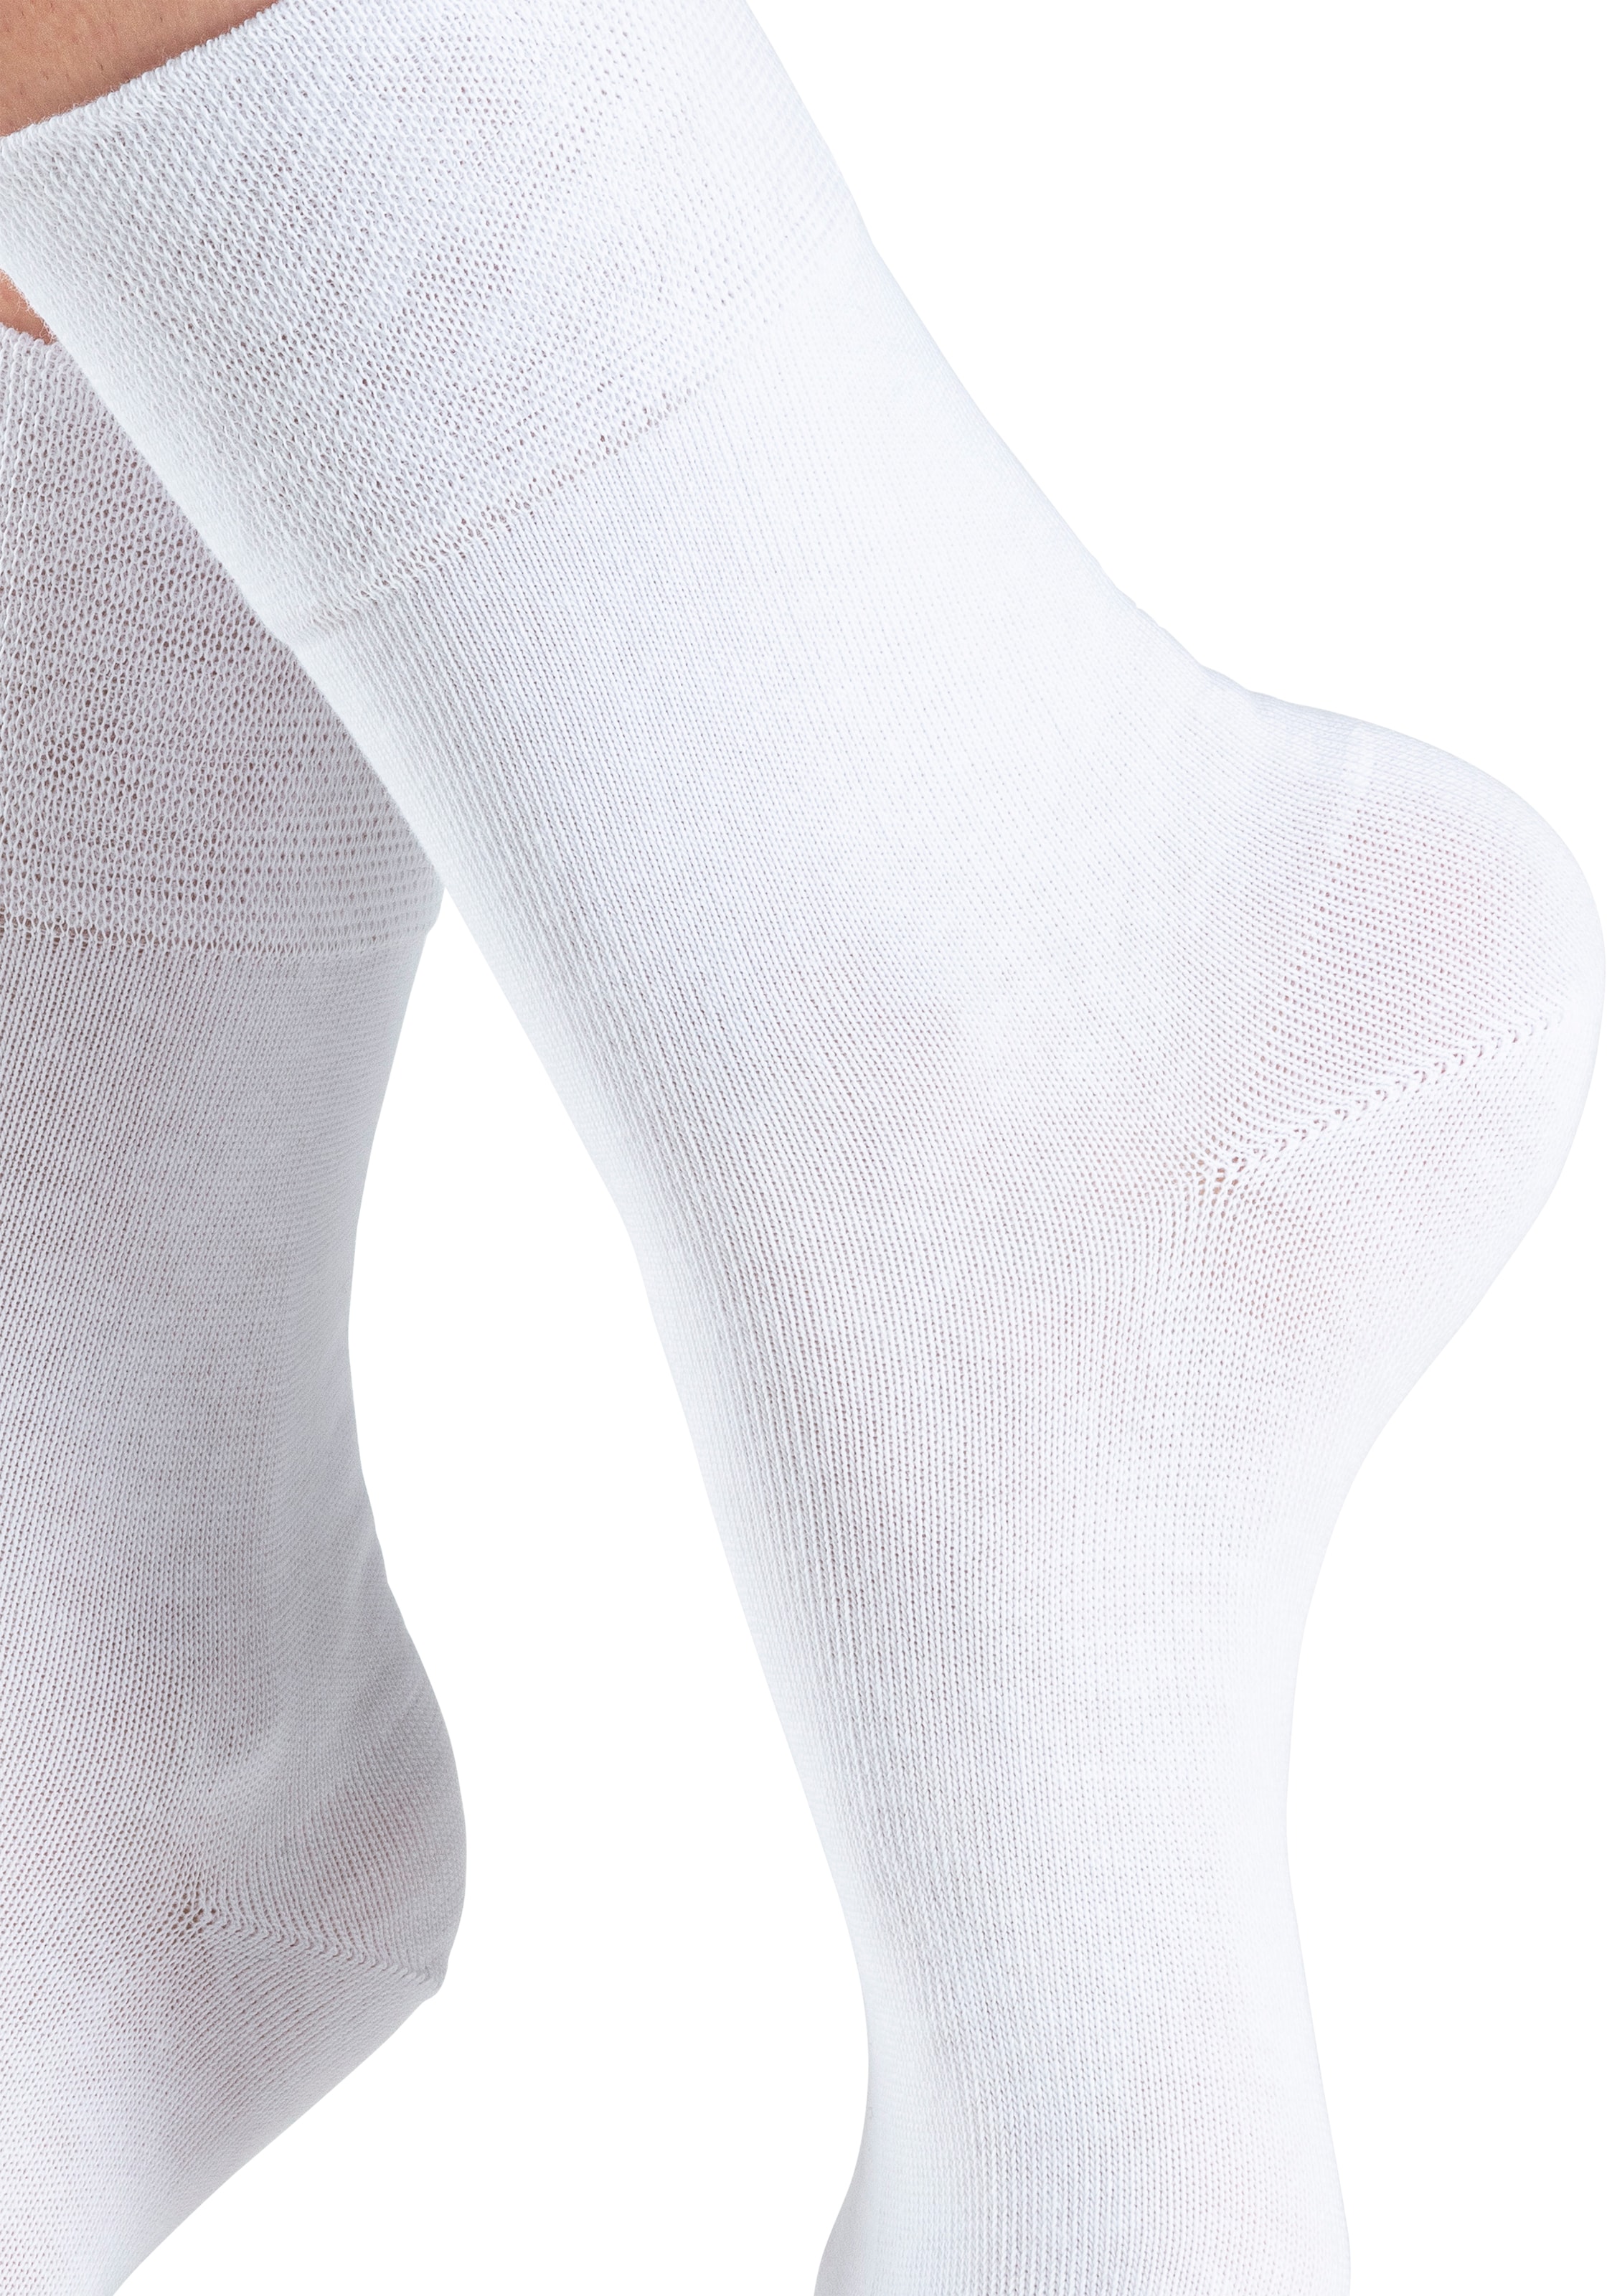 H.I.S Socken, (Packung, 6 Paar), mit Komfortbund auch für Diabetiker geeignet